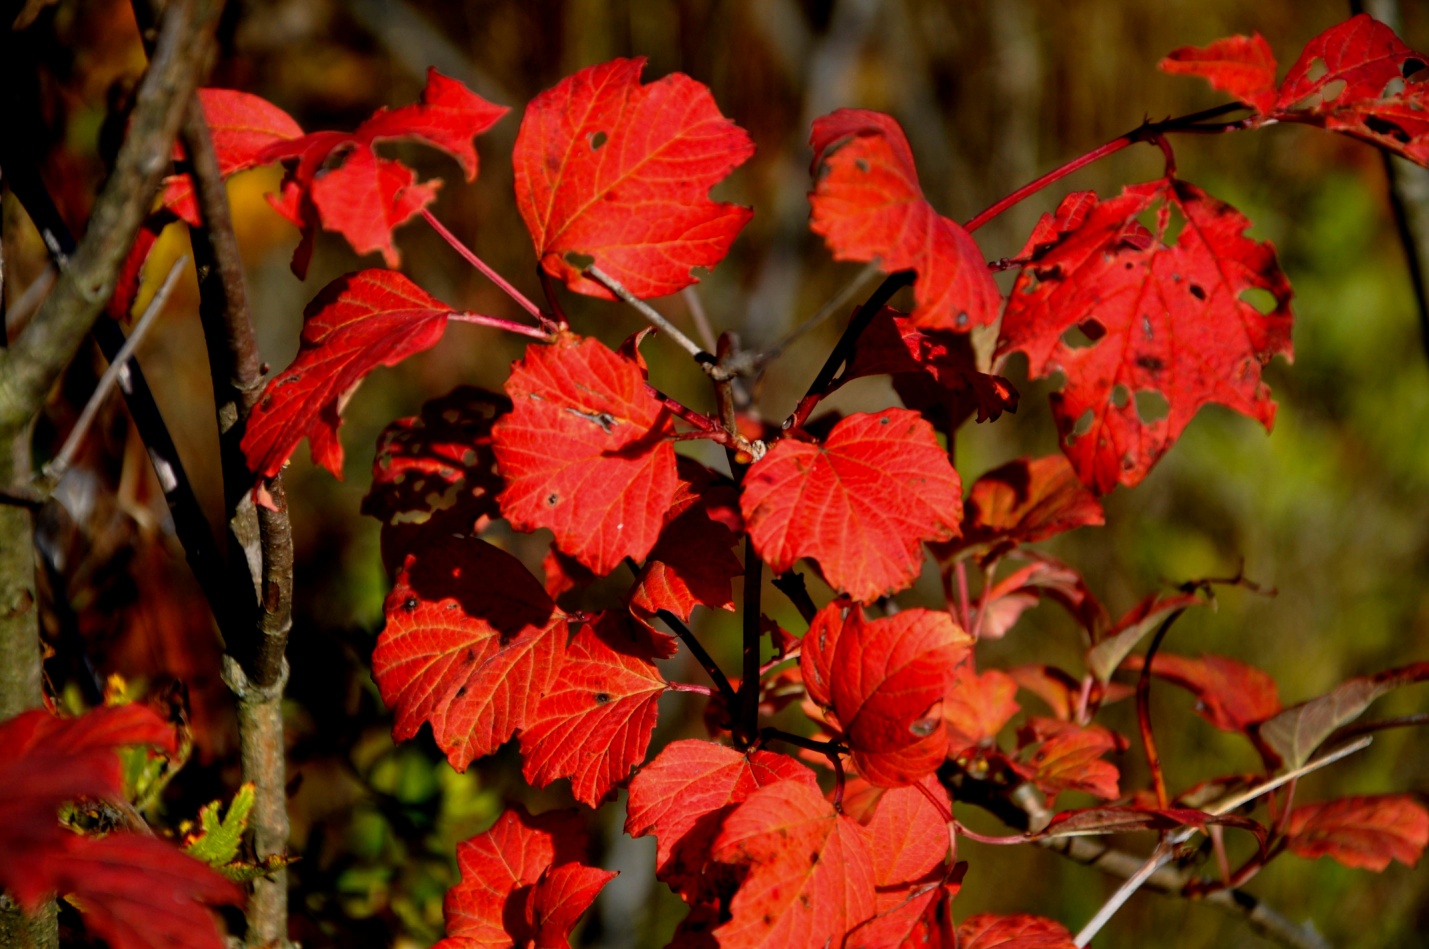 Осенние красные листья